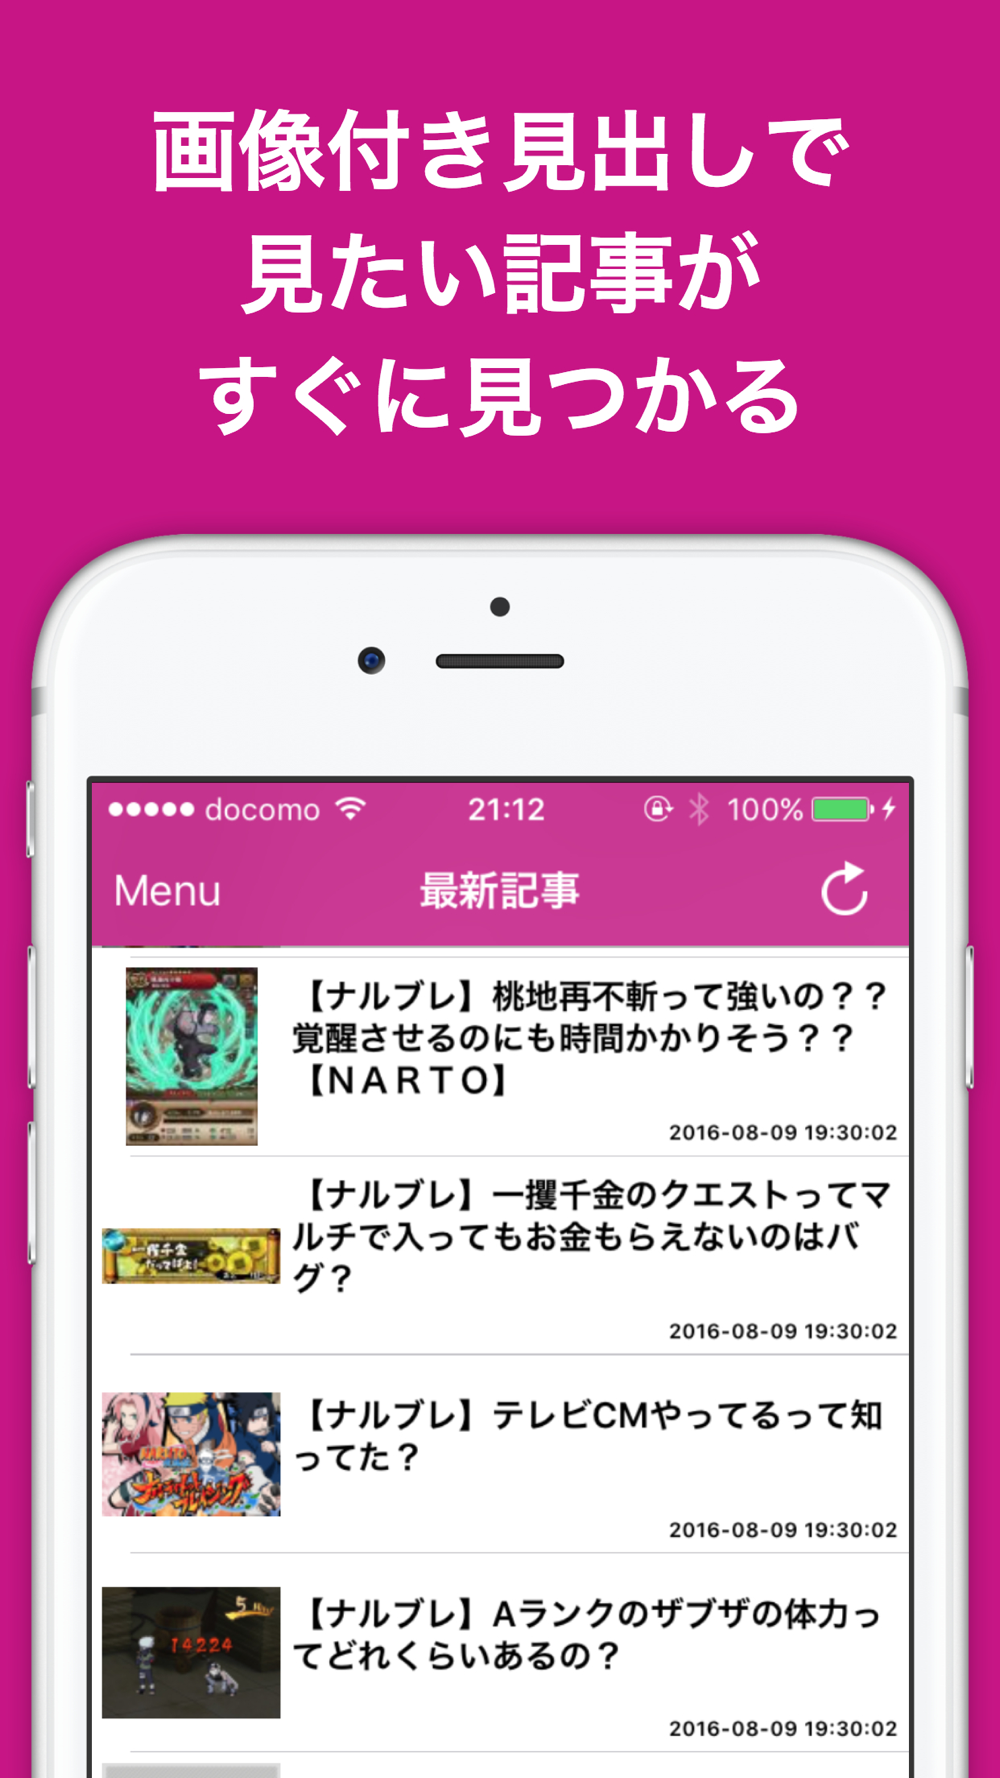 攻略ブログまとめニュース速報 For Naruto ナルト 疾風伝 ナルティメットブレイジングナルブレ Free Download App For Iphone Steprimo Com